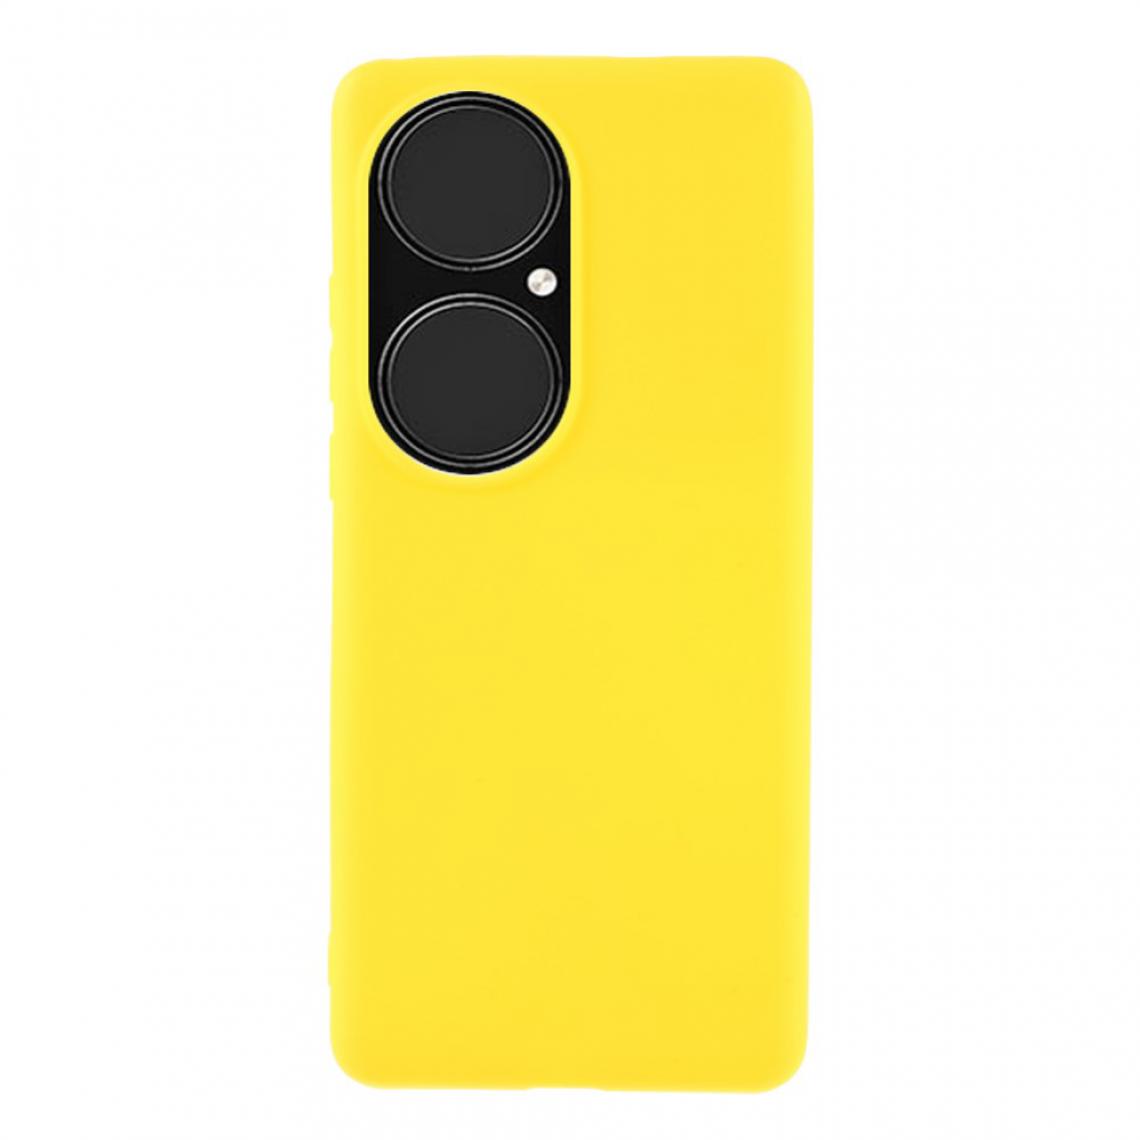 Other - Coque en TPU Antichoc mat double face jaune pour votre Huawei P50 Pro - Coque, étui smartphone